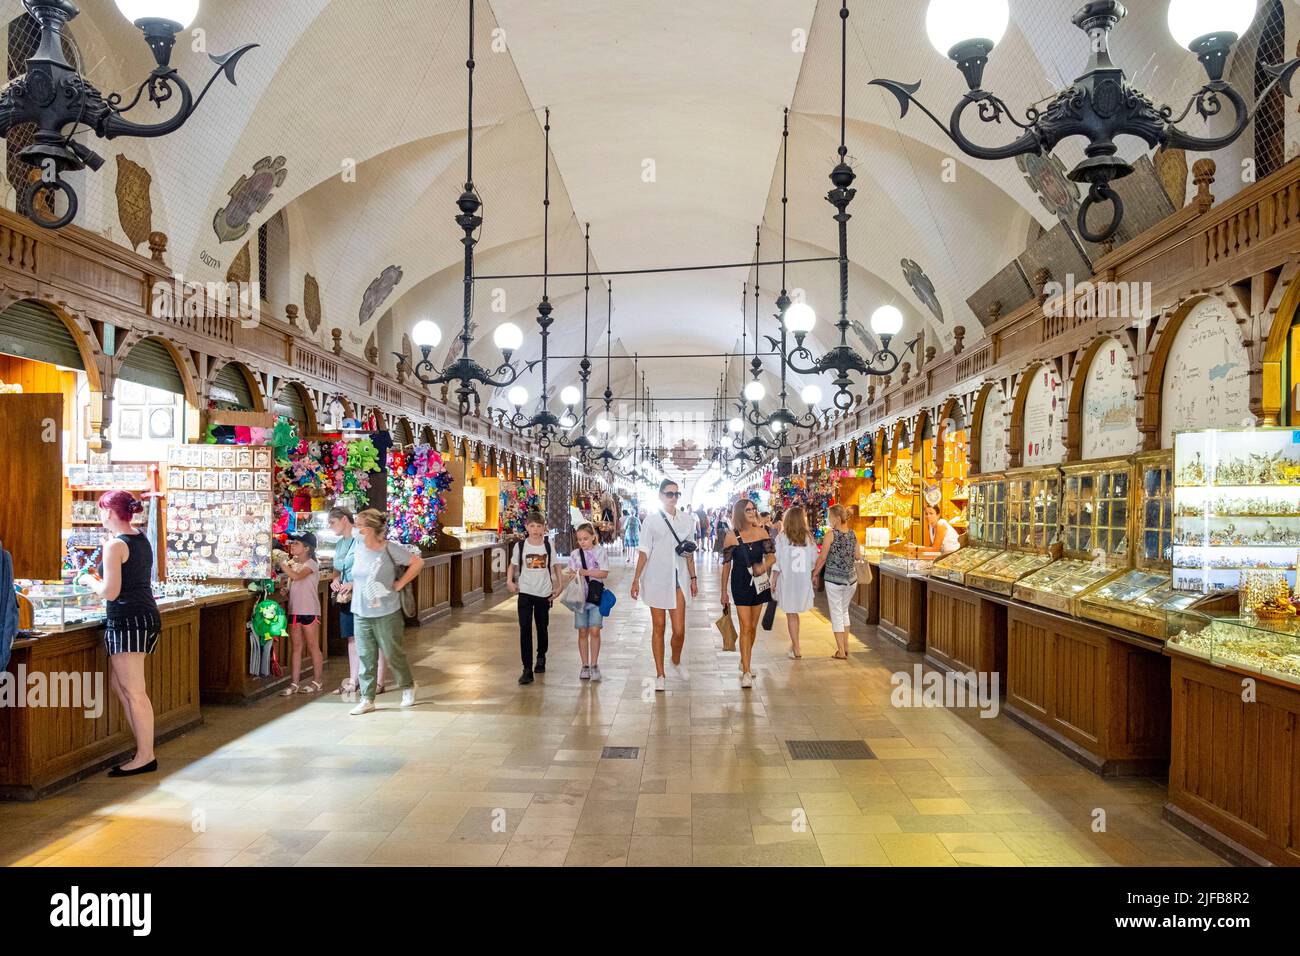 Polonia, Pequeña Polonia, Cracovia, casco antiguo (Stare Mastro), declarado Patrimonio de la Humanidad por la UNESCO, plaza del mercado (Rynek Glowny) con el antiguo salón de telas y tiendas de recuerdos Foto de stock